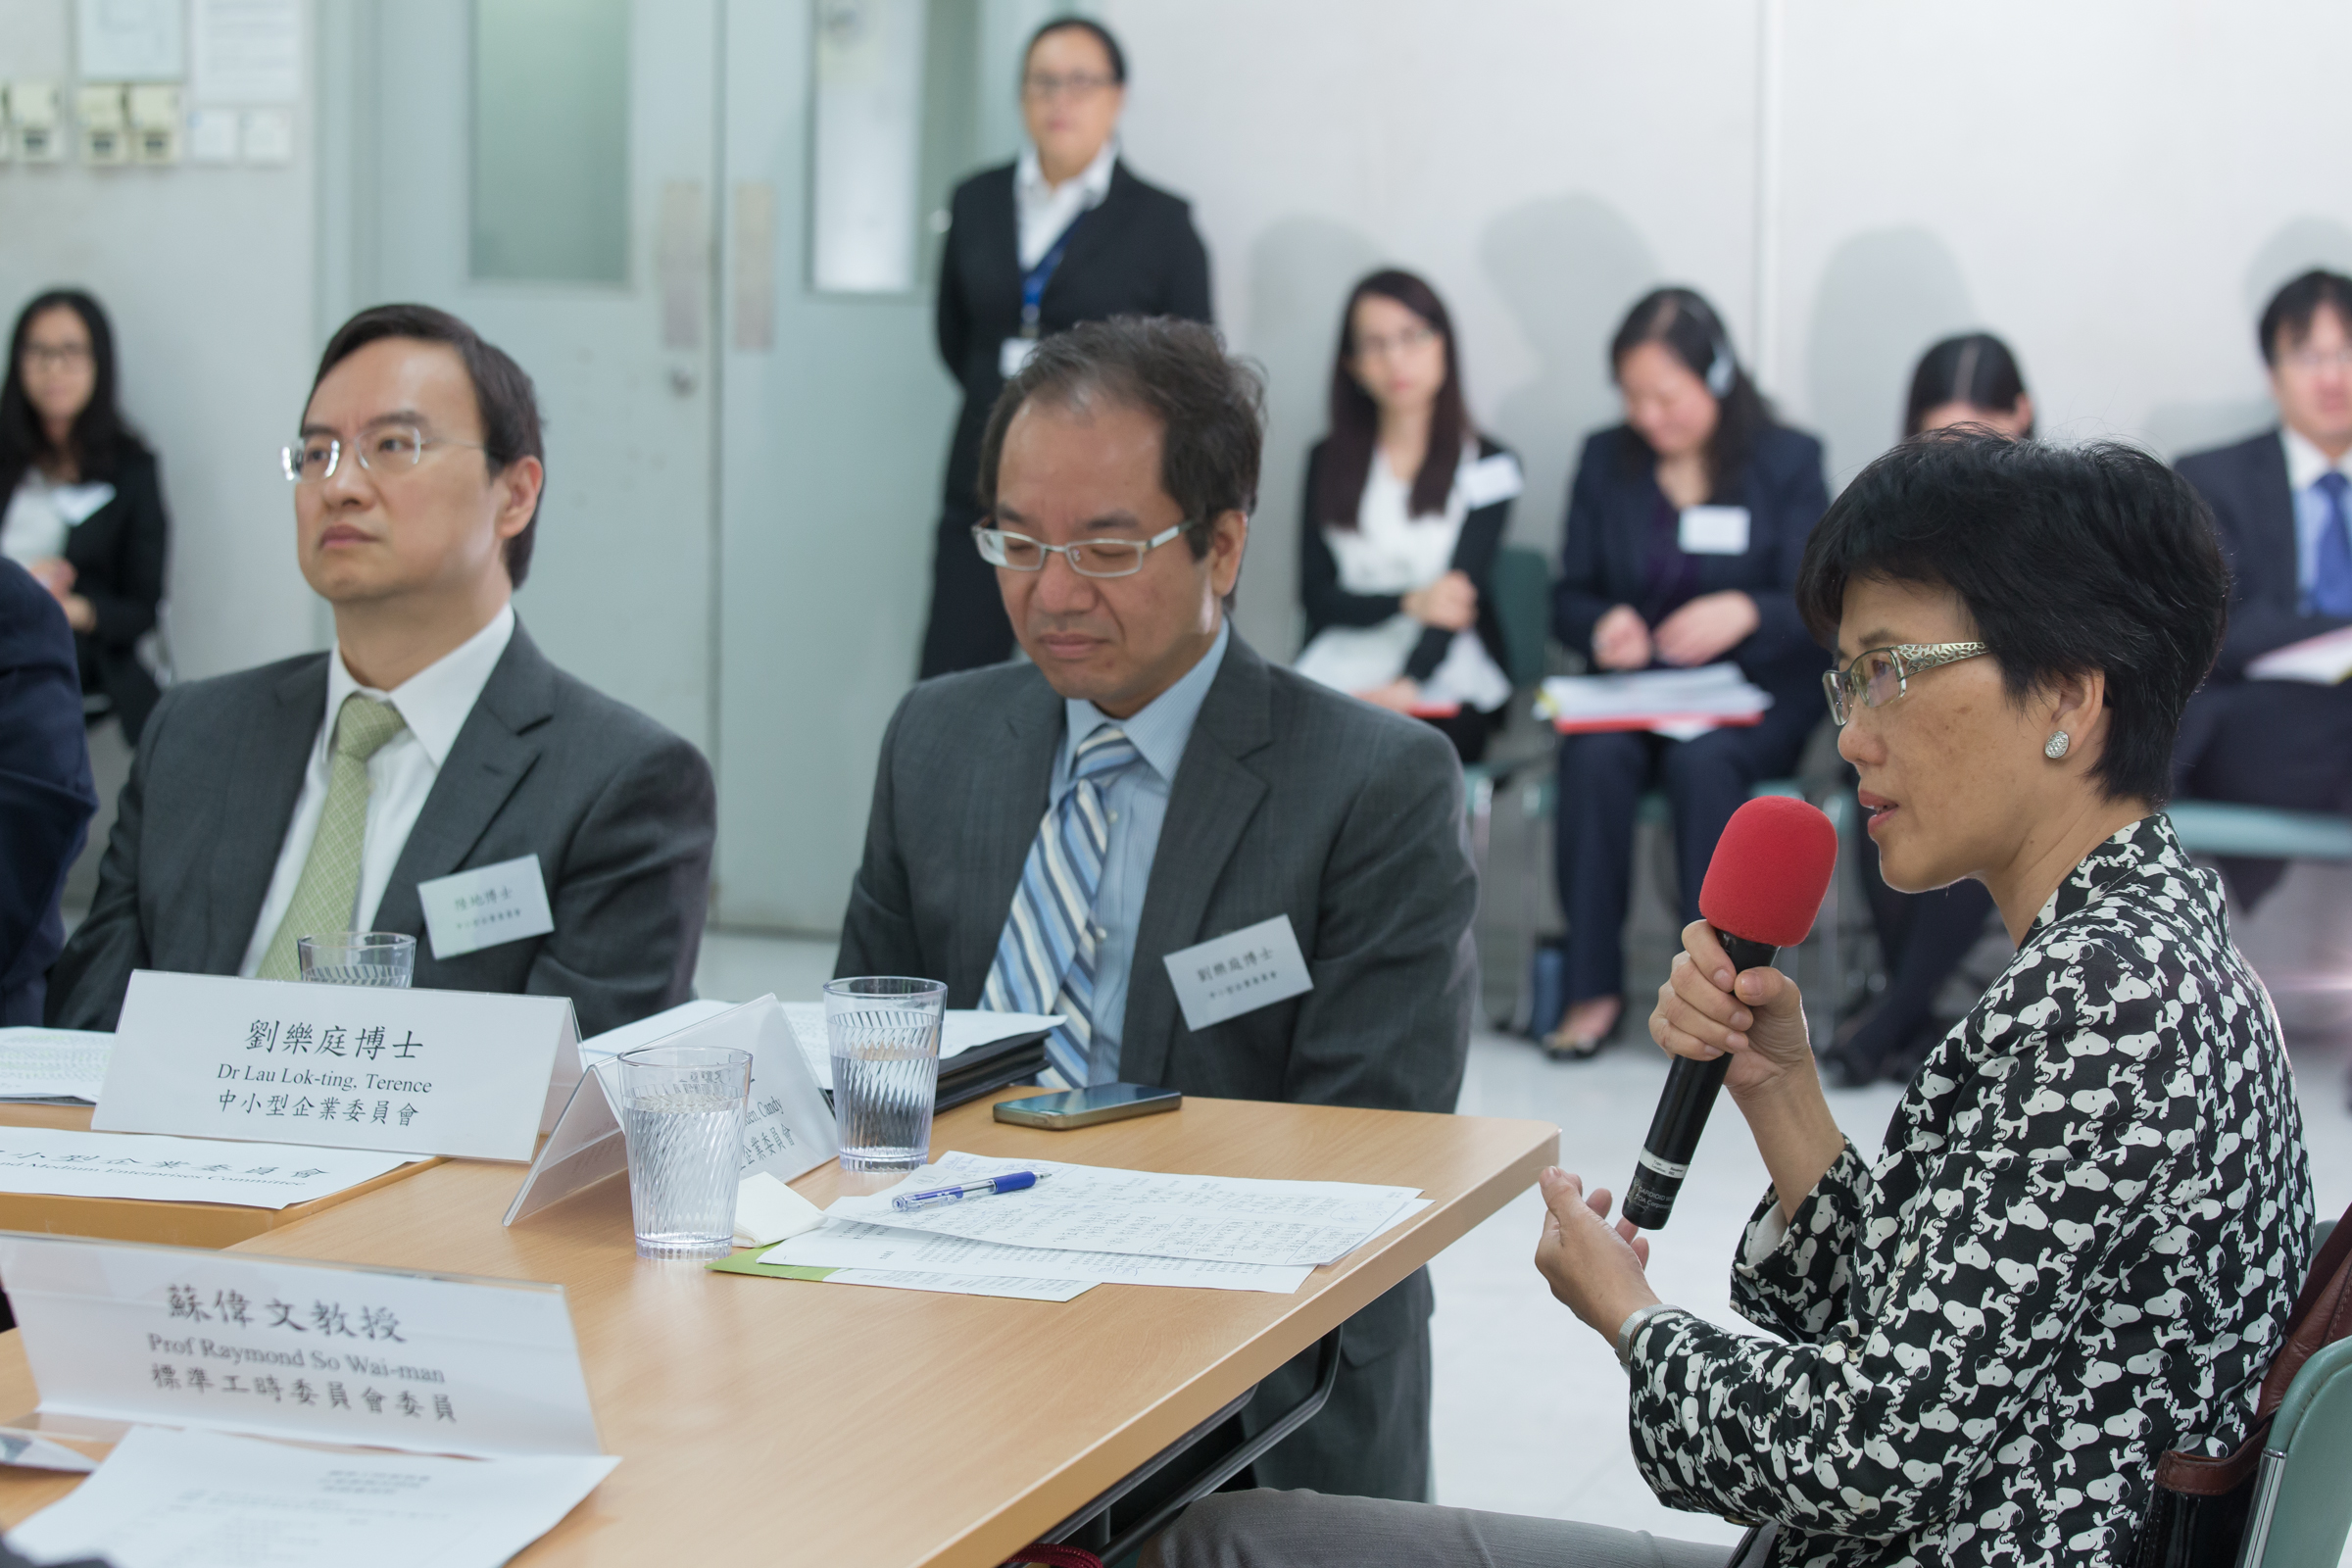 圖         片         5 : 中        小        型        企        業        委        員        會        委        員        於        2014 年        5 月        15 日        出        席        諮        詢        座        談        會        ，        向        標        準        工        時        委        員        會        反        映        中        小        企        業        對        訂        立        標        準        工        時        的        意        見        。       